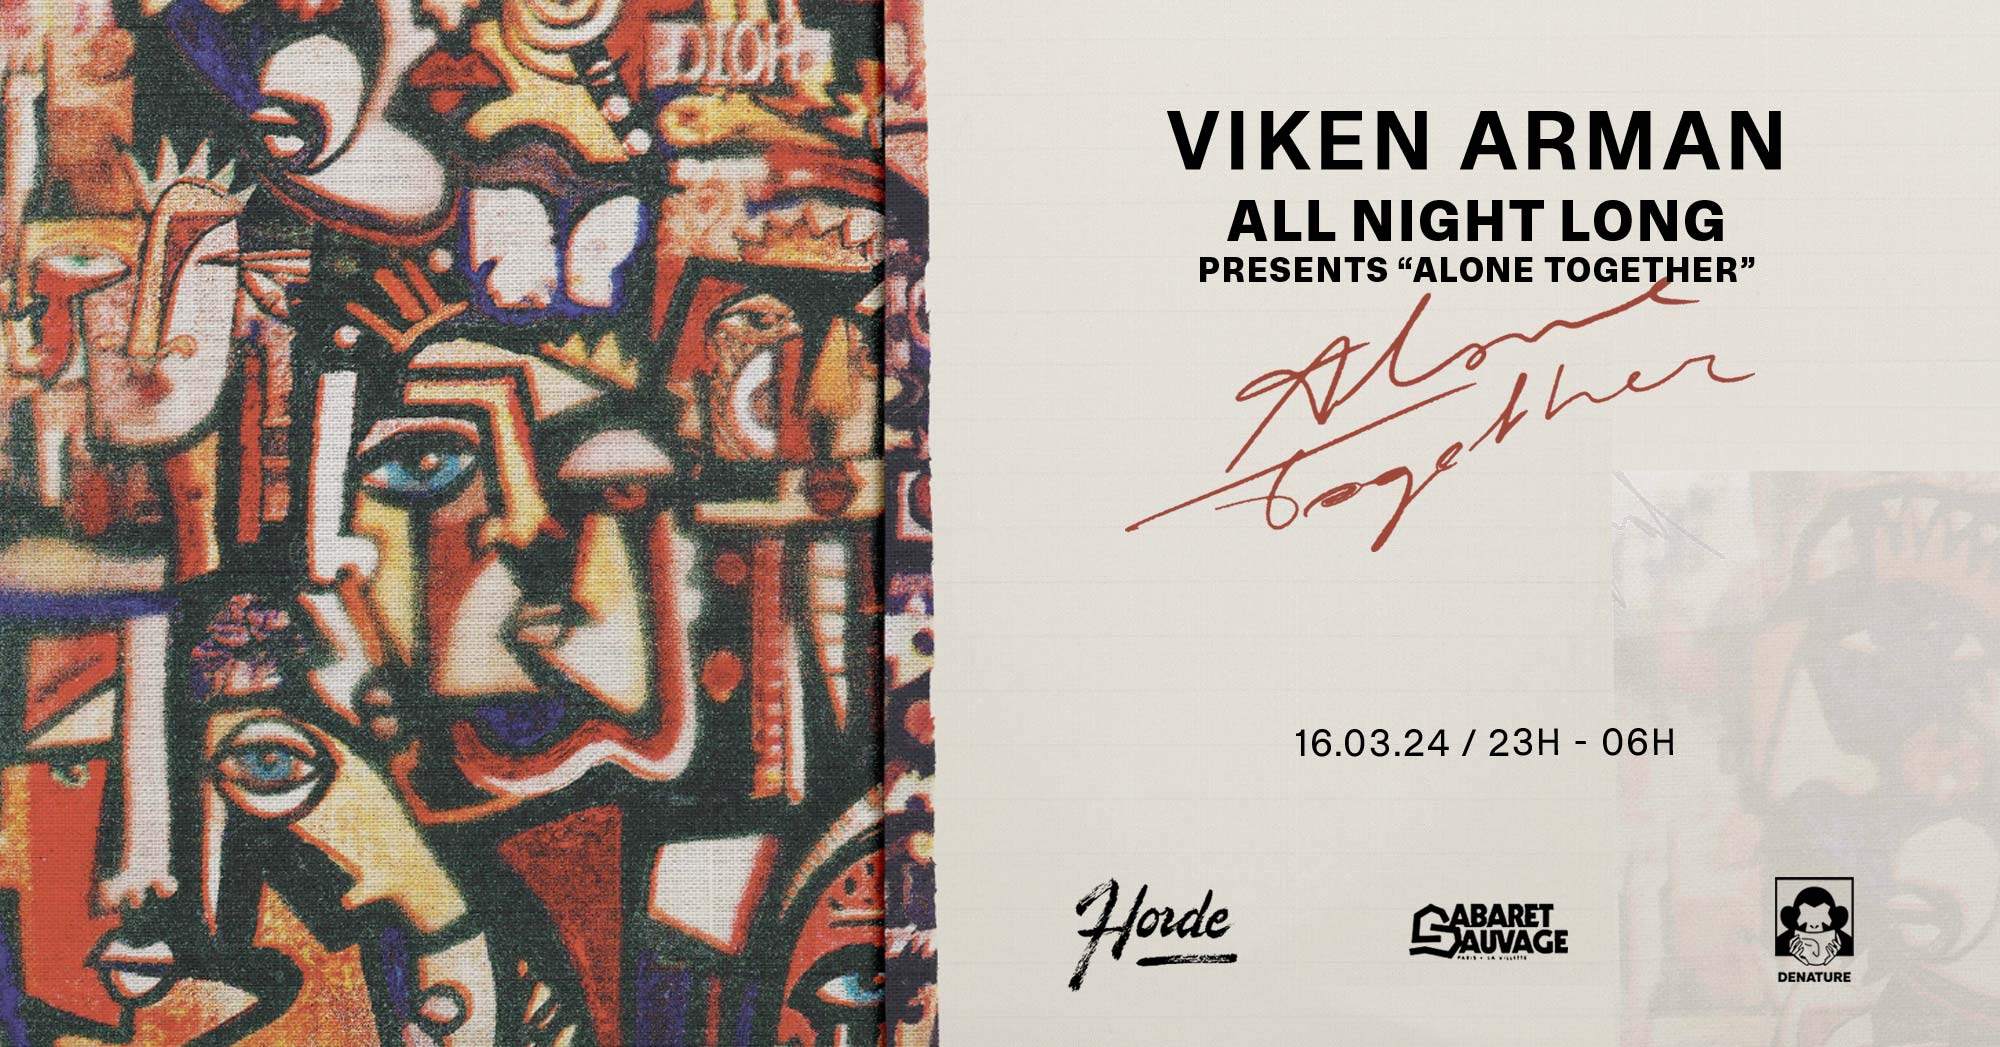 Horde: Viken Arman – All night long - Página frontal